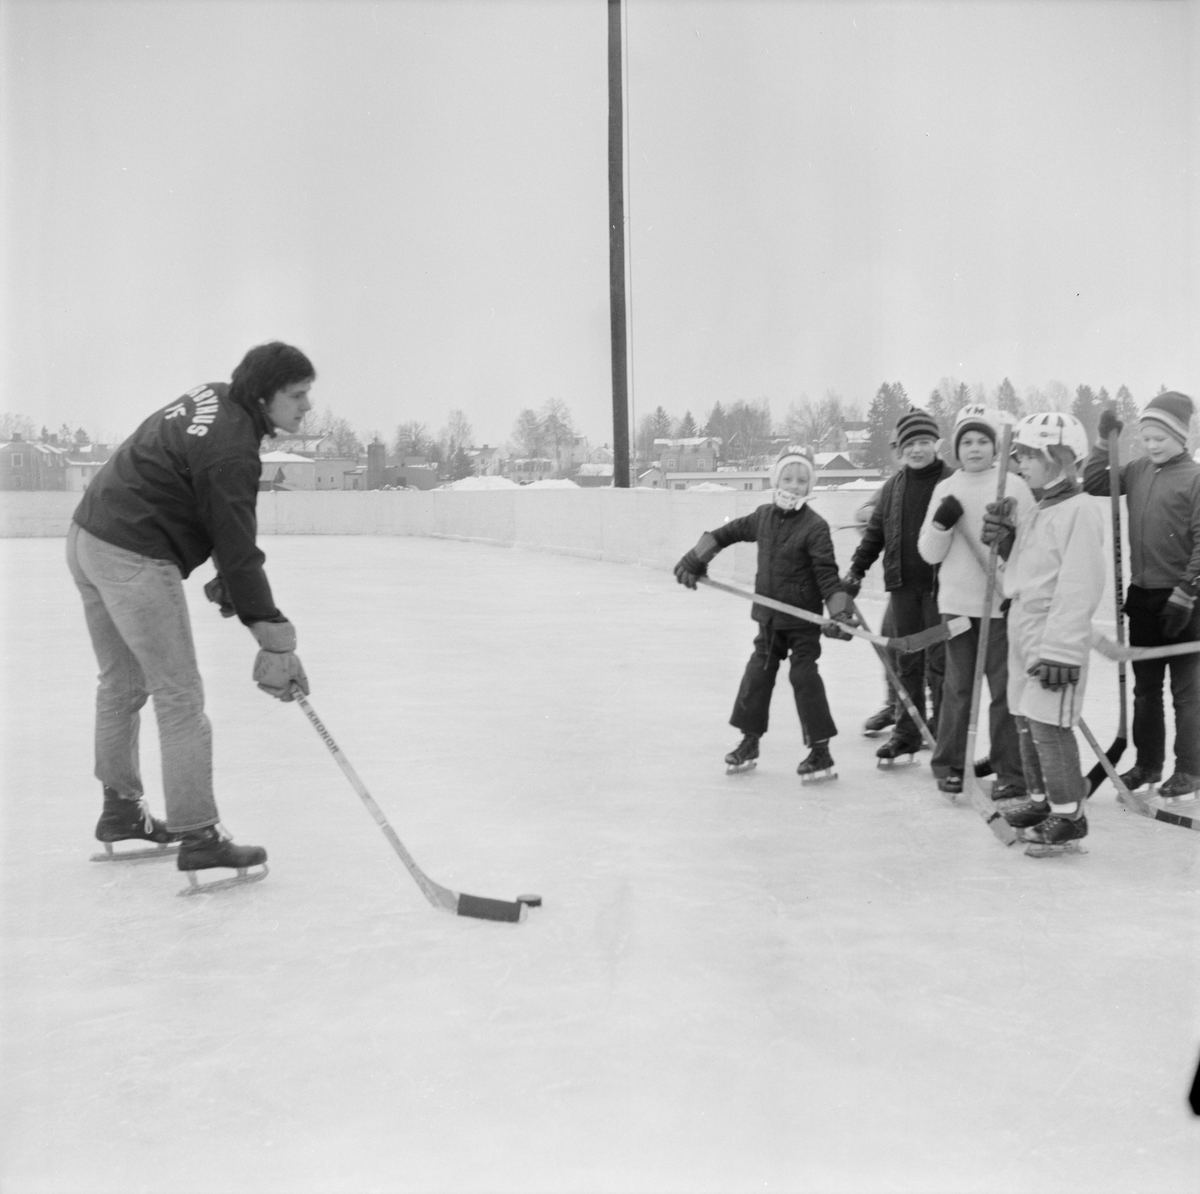 Populärt med hockey på lov, Tierp, Uppland, februari 1972